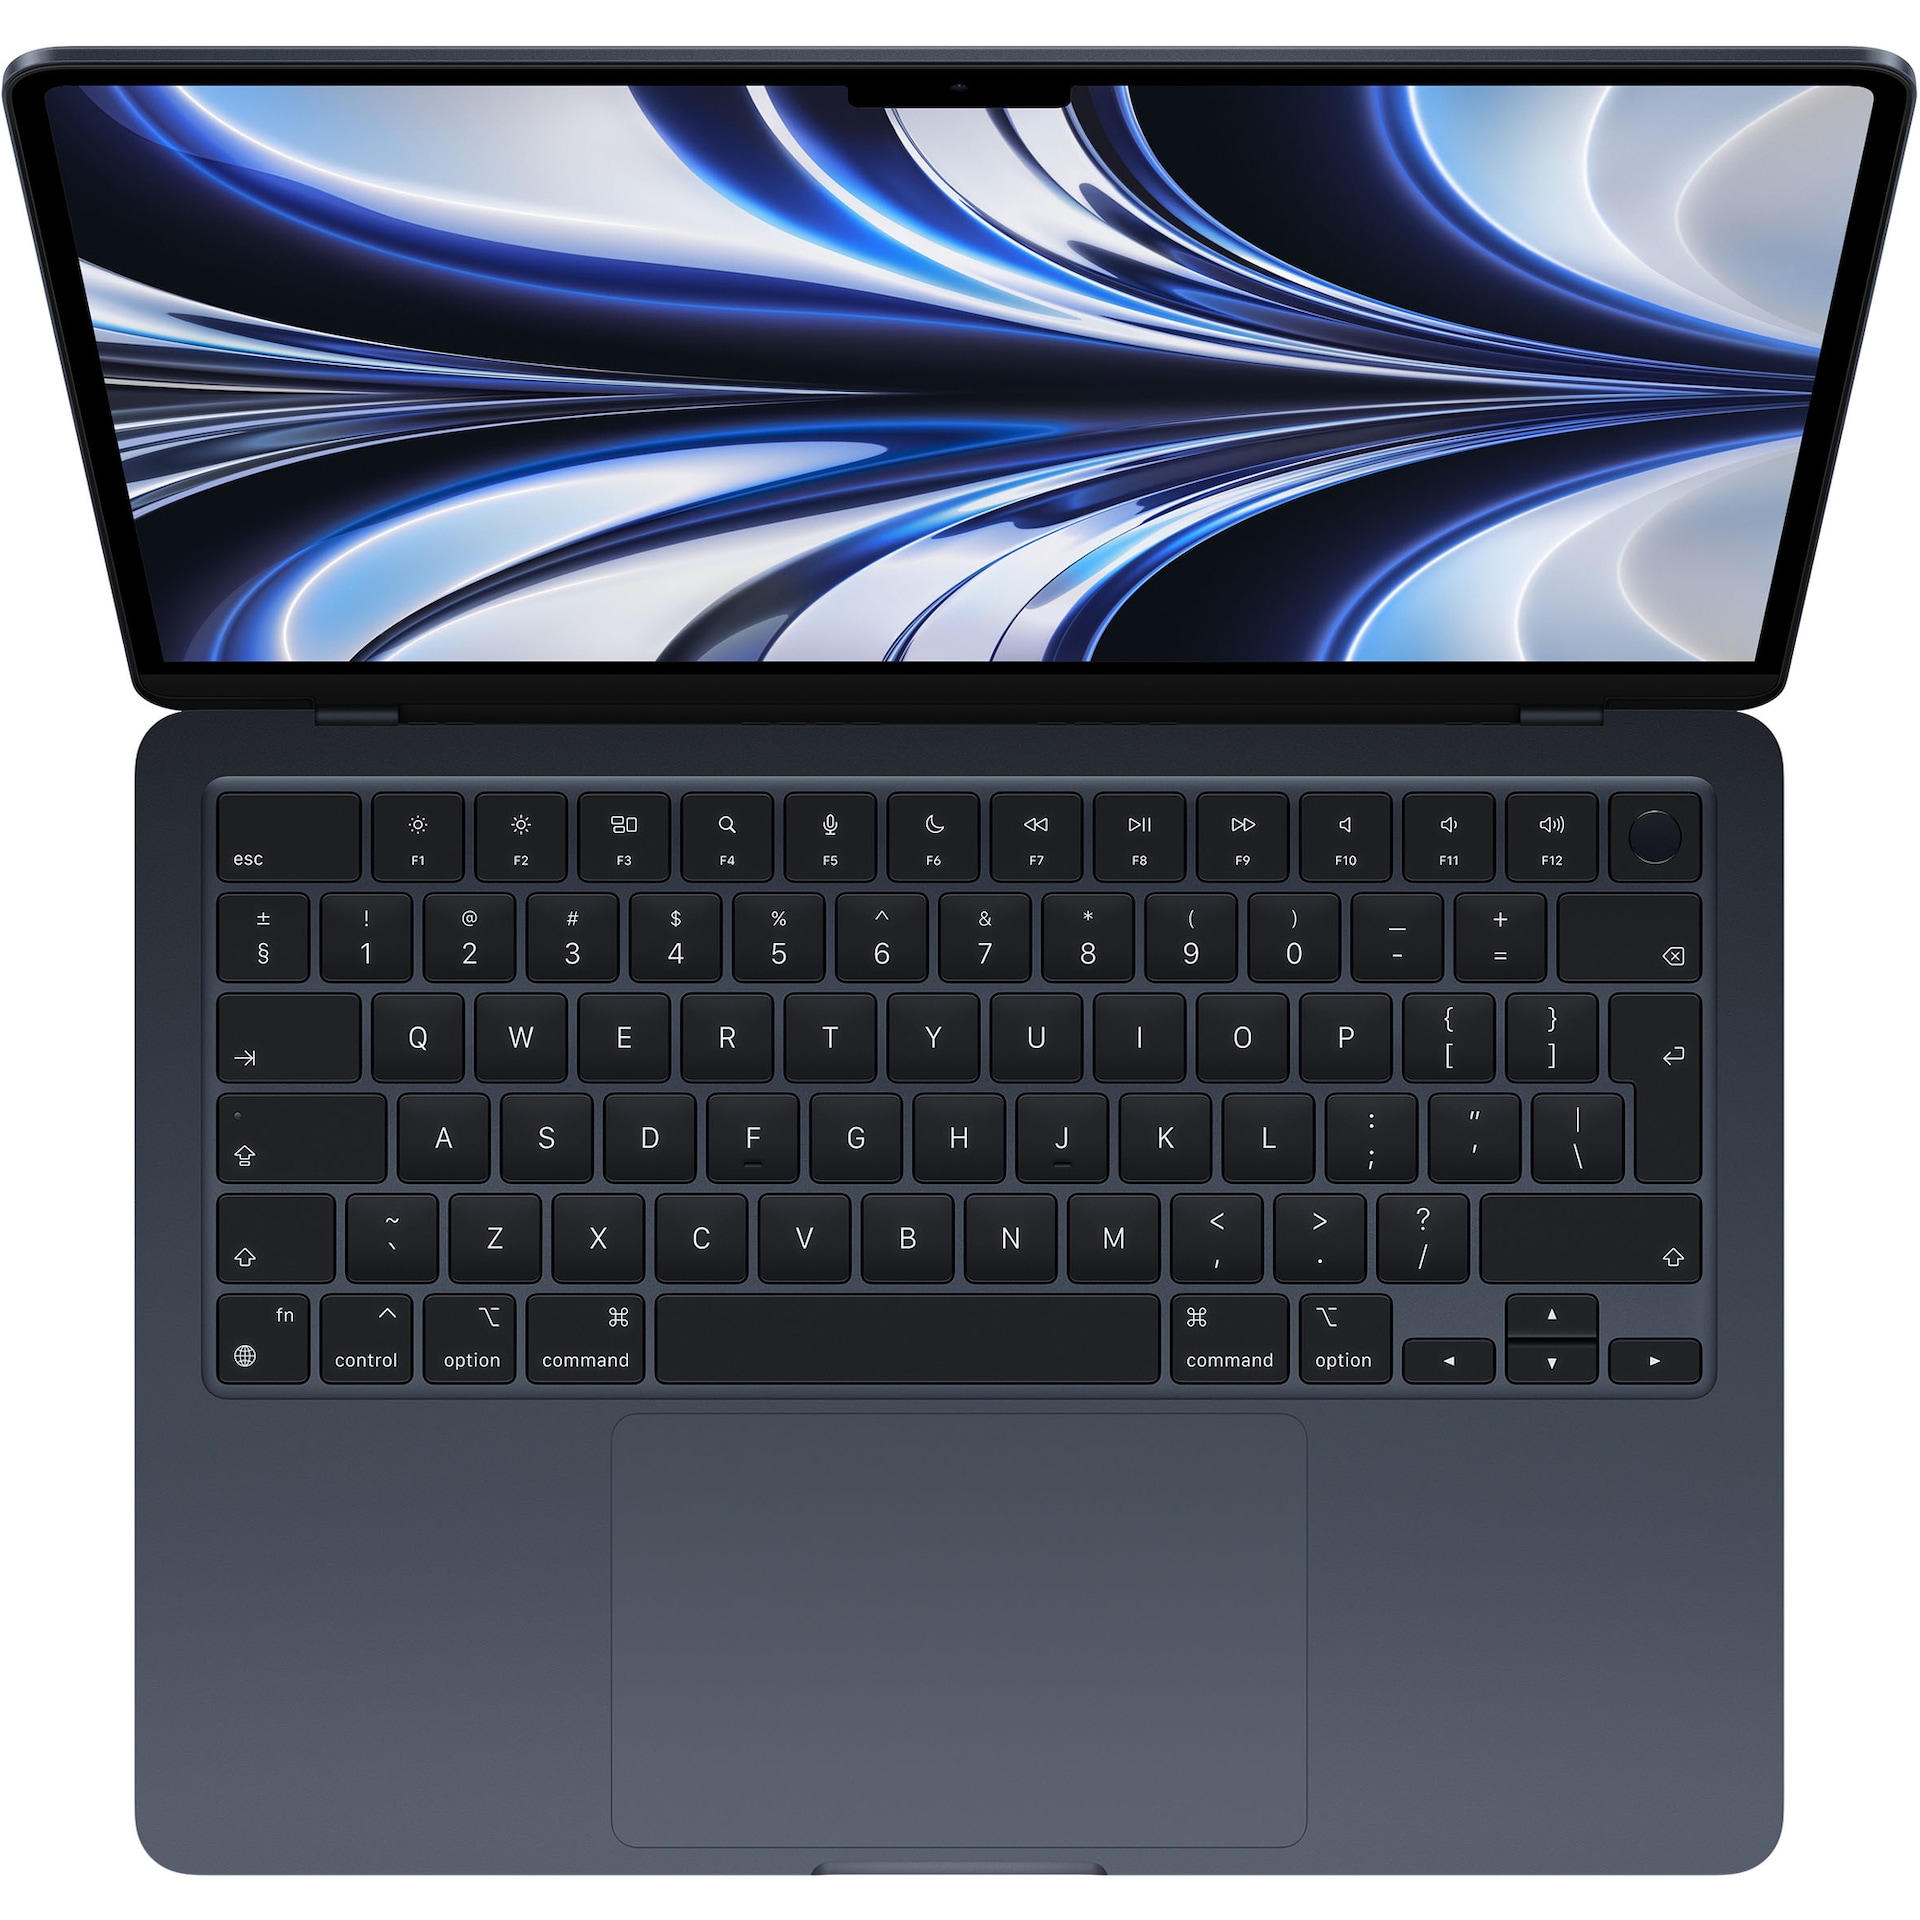 MacBook Air M2 2022 8/256GB (midnatt)